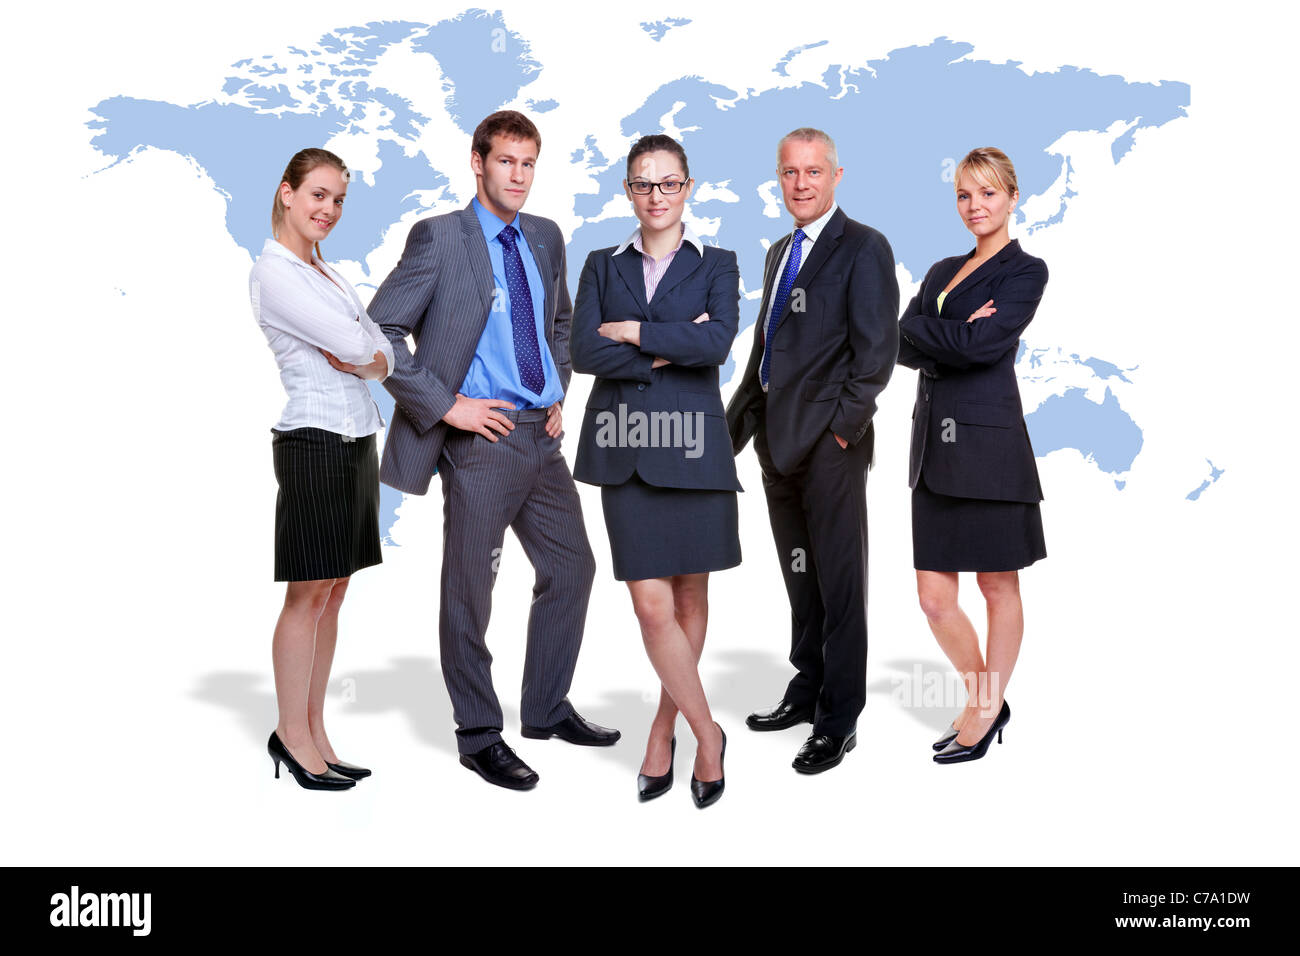 Foto von fünf corporate Menschen auf weiß mit einer Karte der Welt hinter Ihnen, gut für weltweit und global Business-Themen. Stockfoto